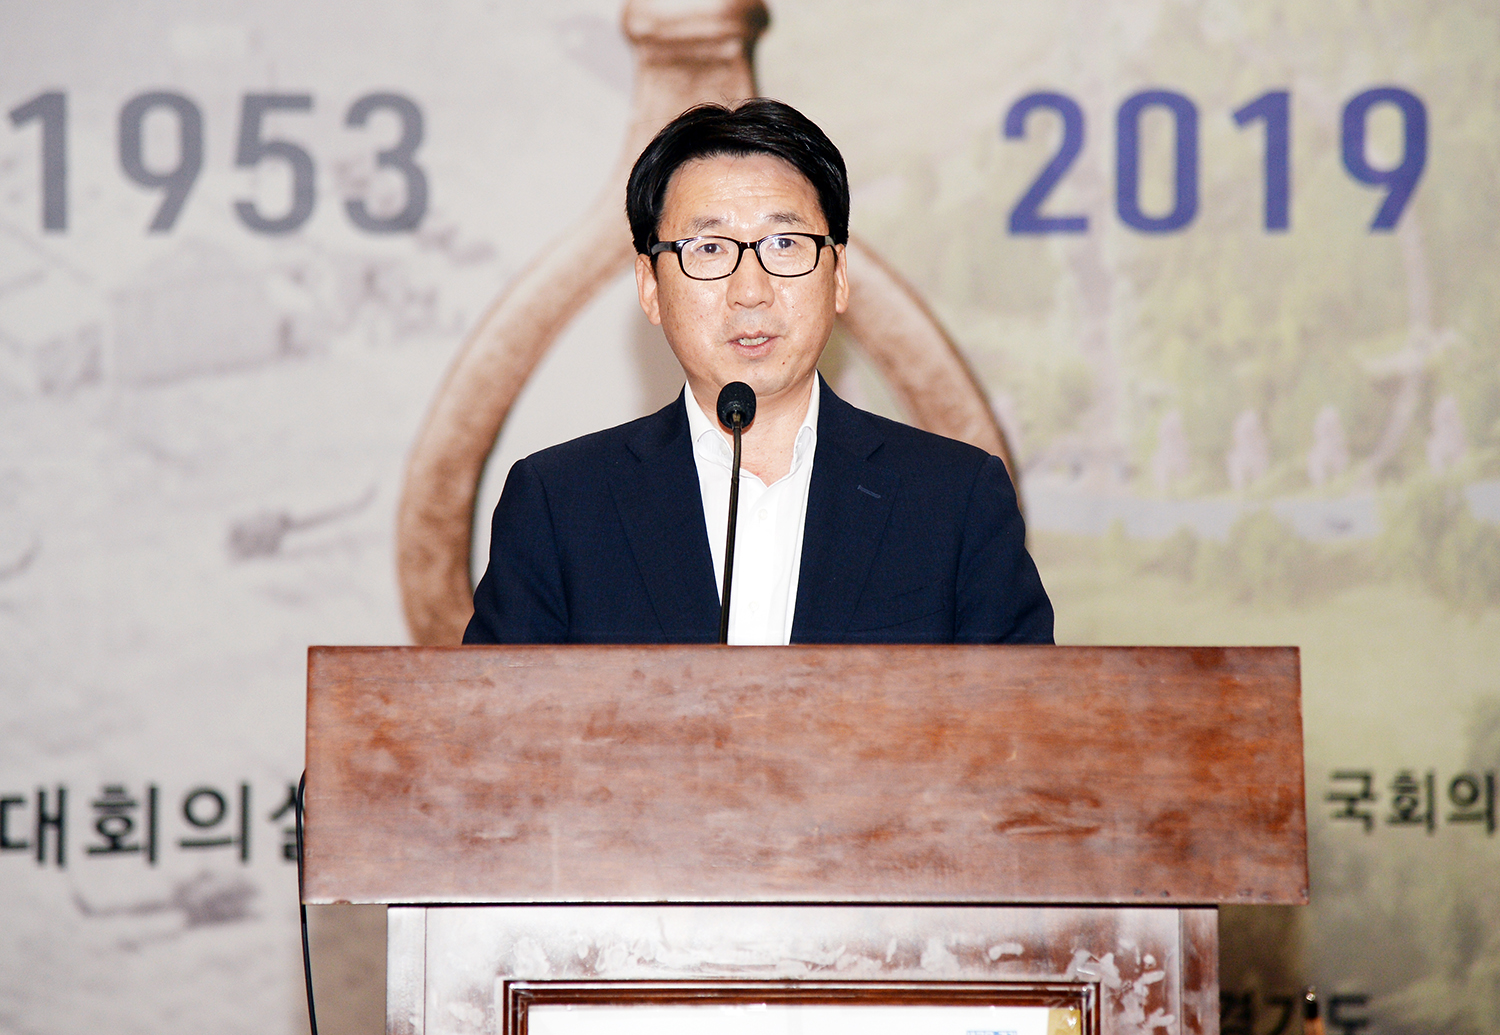 09-16 주한미군 반환공여구역 개발 활성화방안 국회토론회